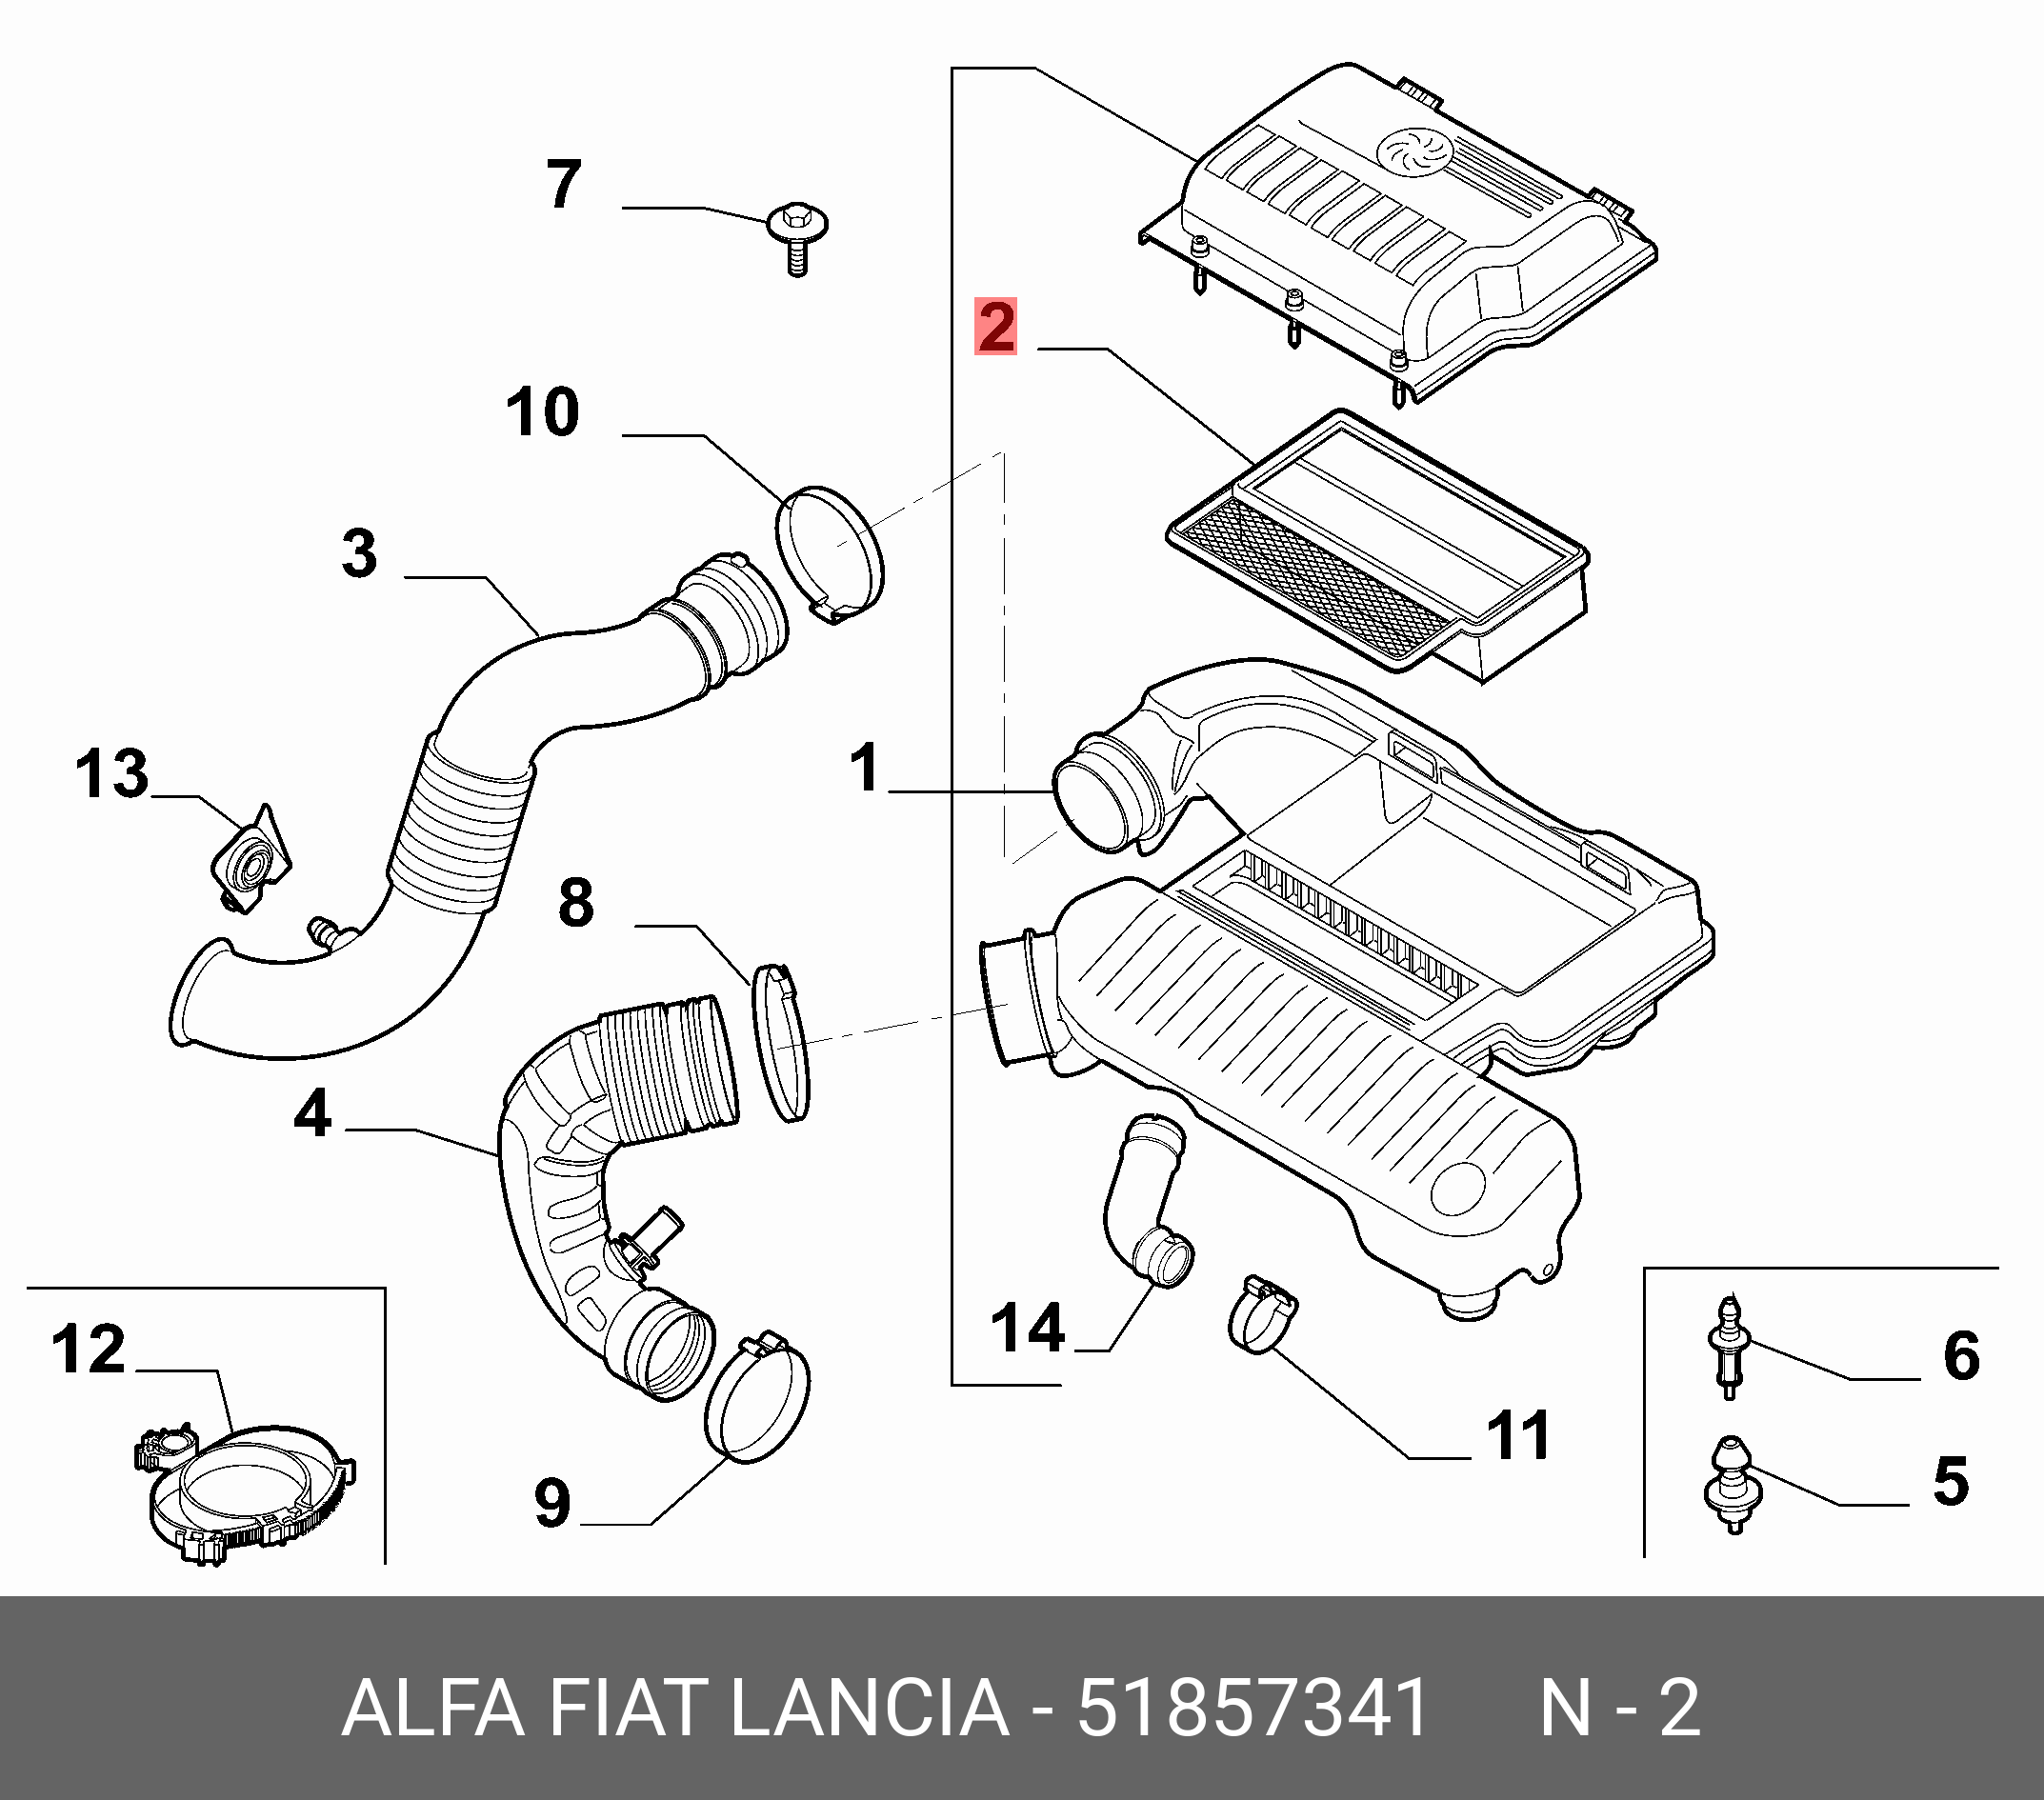 Фильтр воздушный - Fiat/Alfa/Lancia 5 185 7341